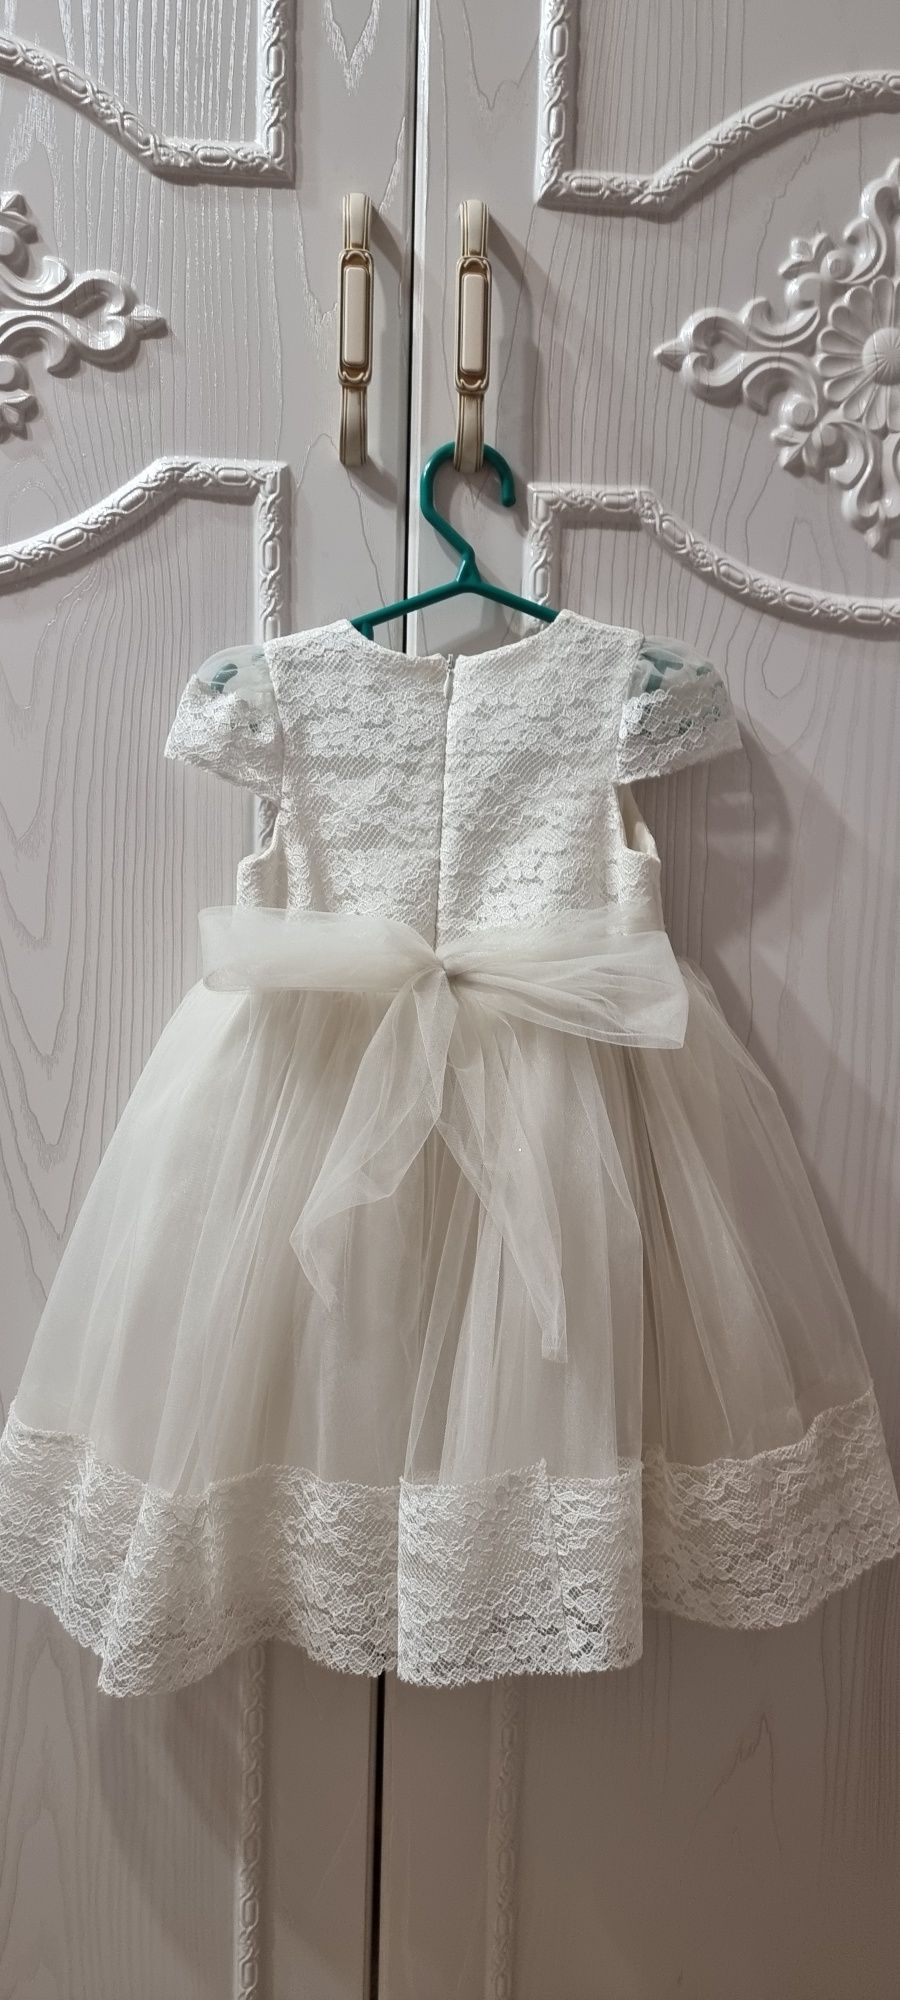 Продаётся красивое детское платье 1-2 года